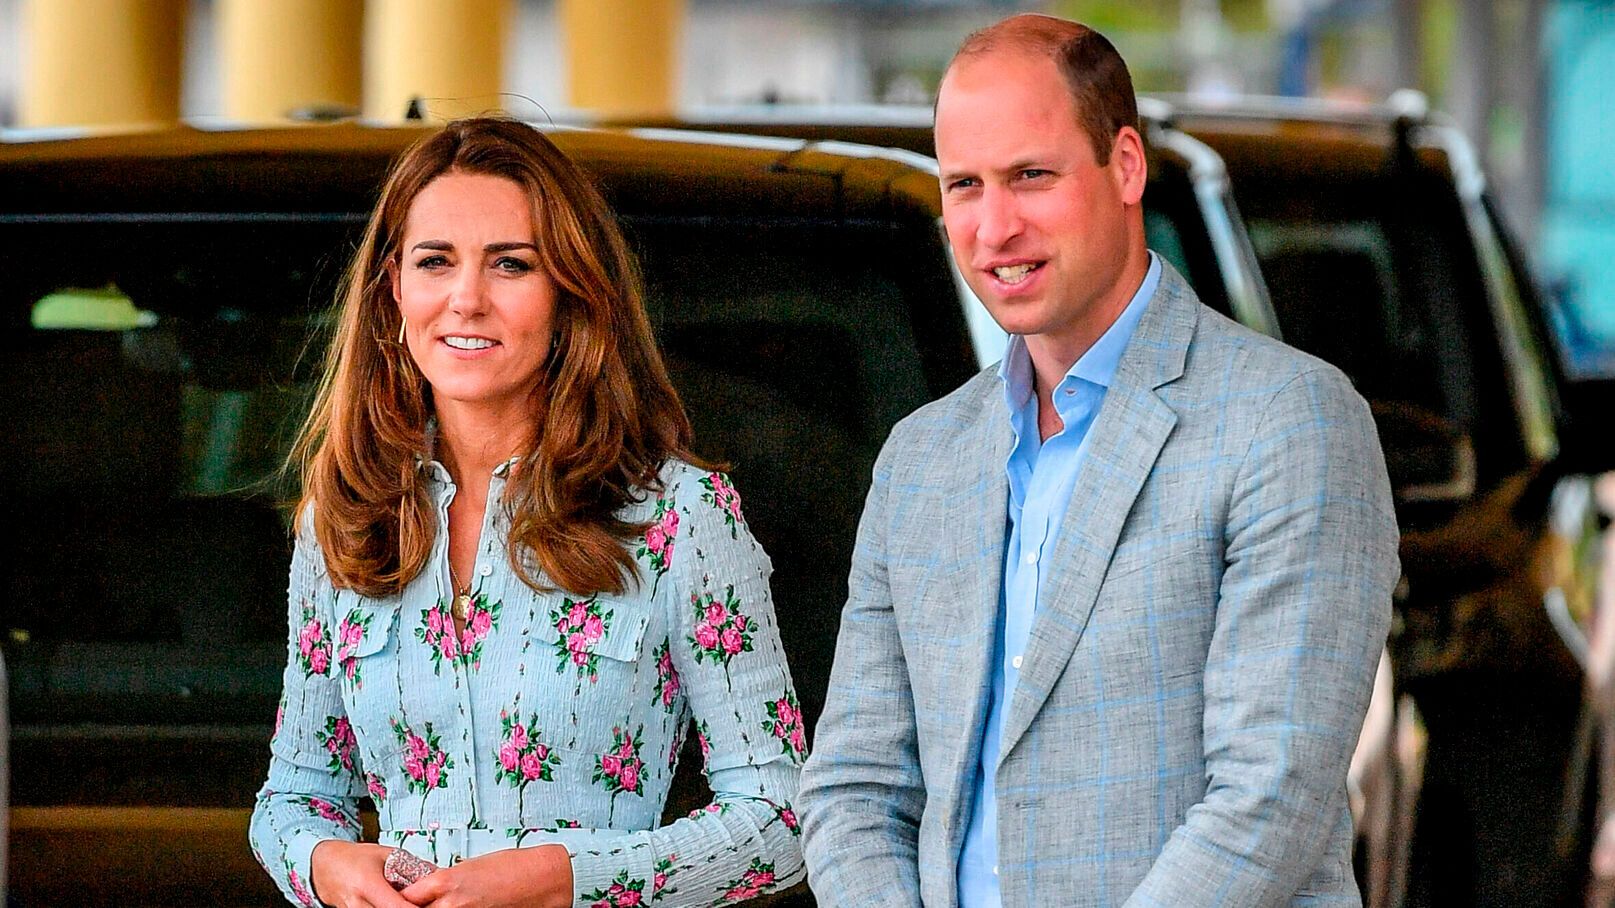 Kate Middleton et le prince William : Cette vidéo qui fait scandale kate middleton prince william pourquoi couple pas droit voyager dans train royal